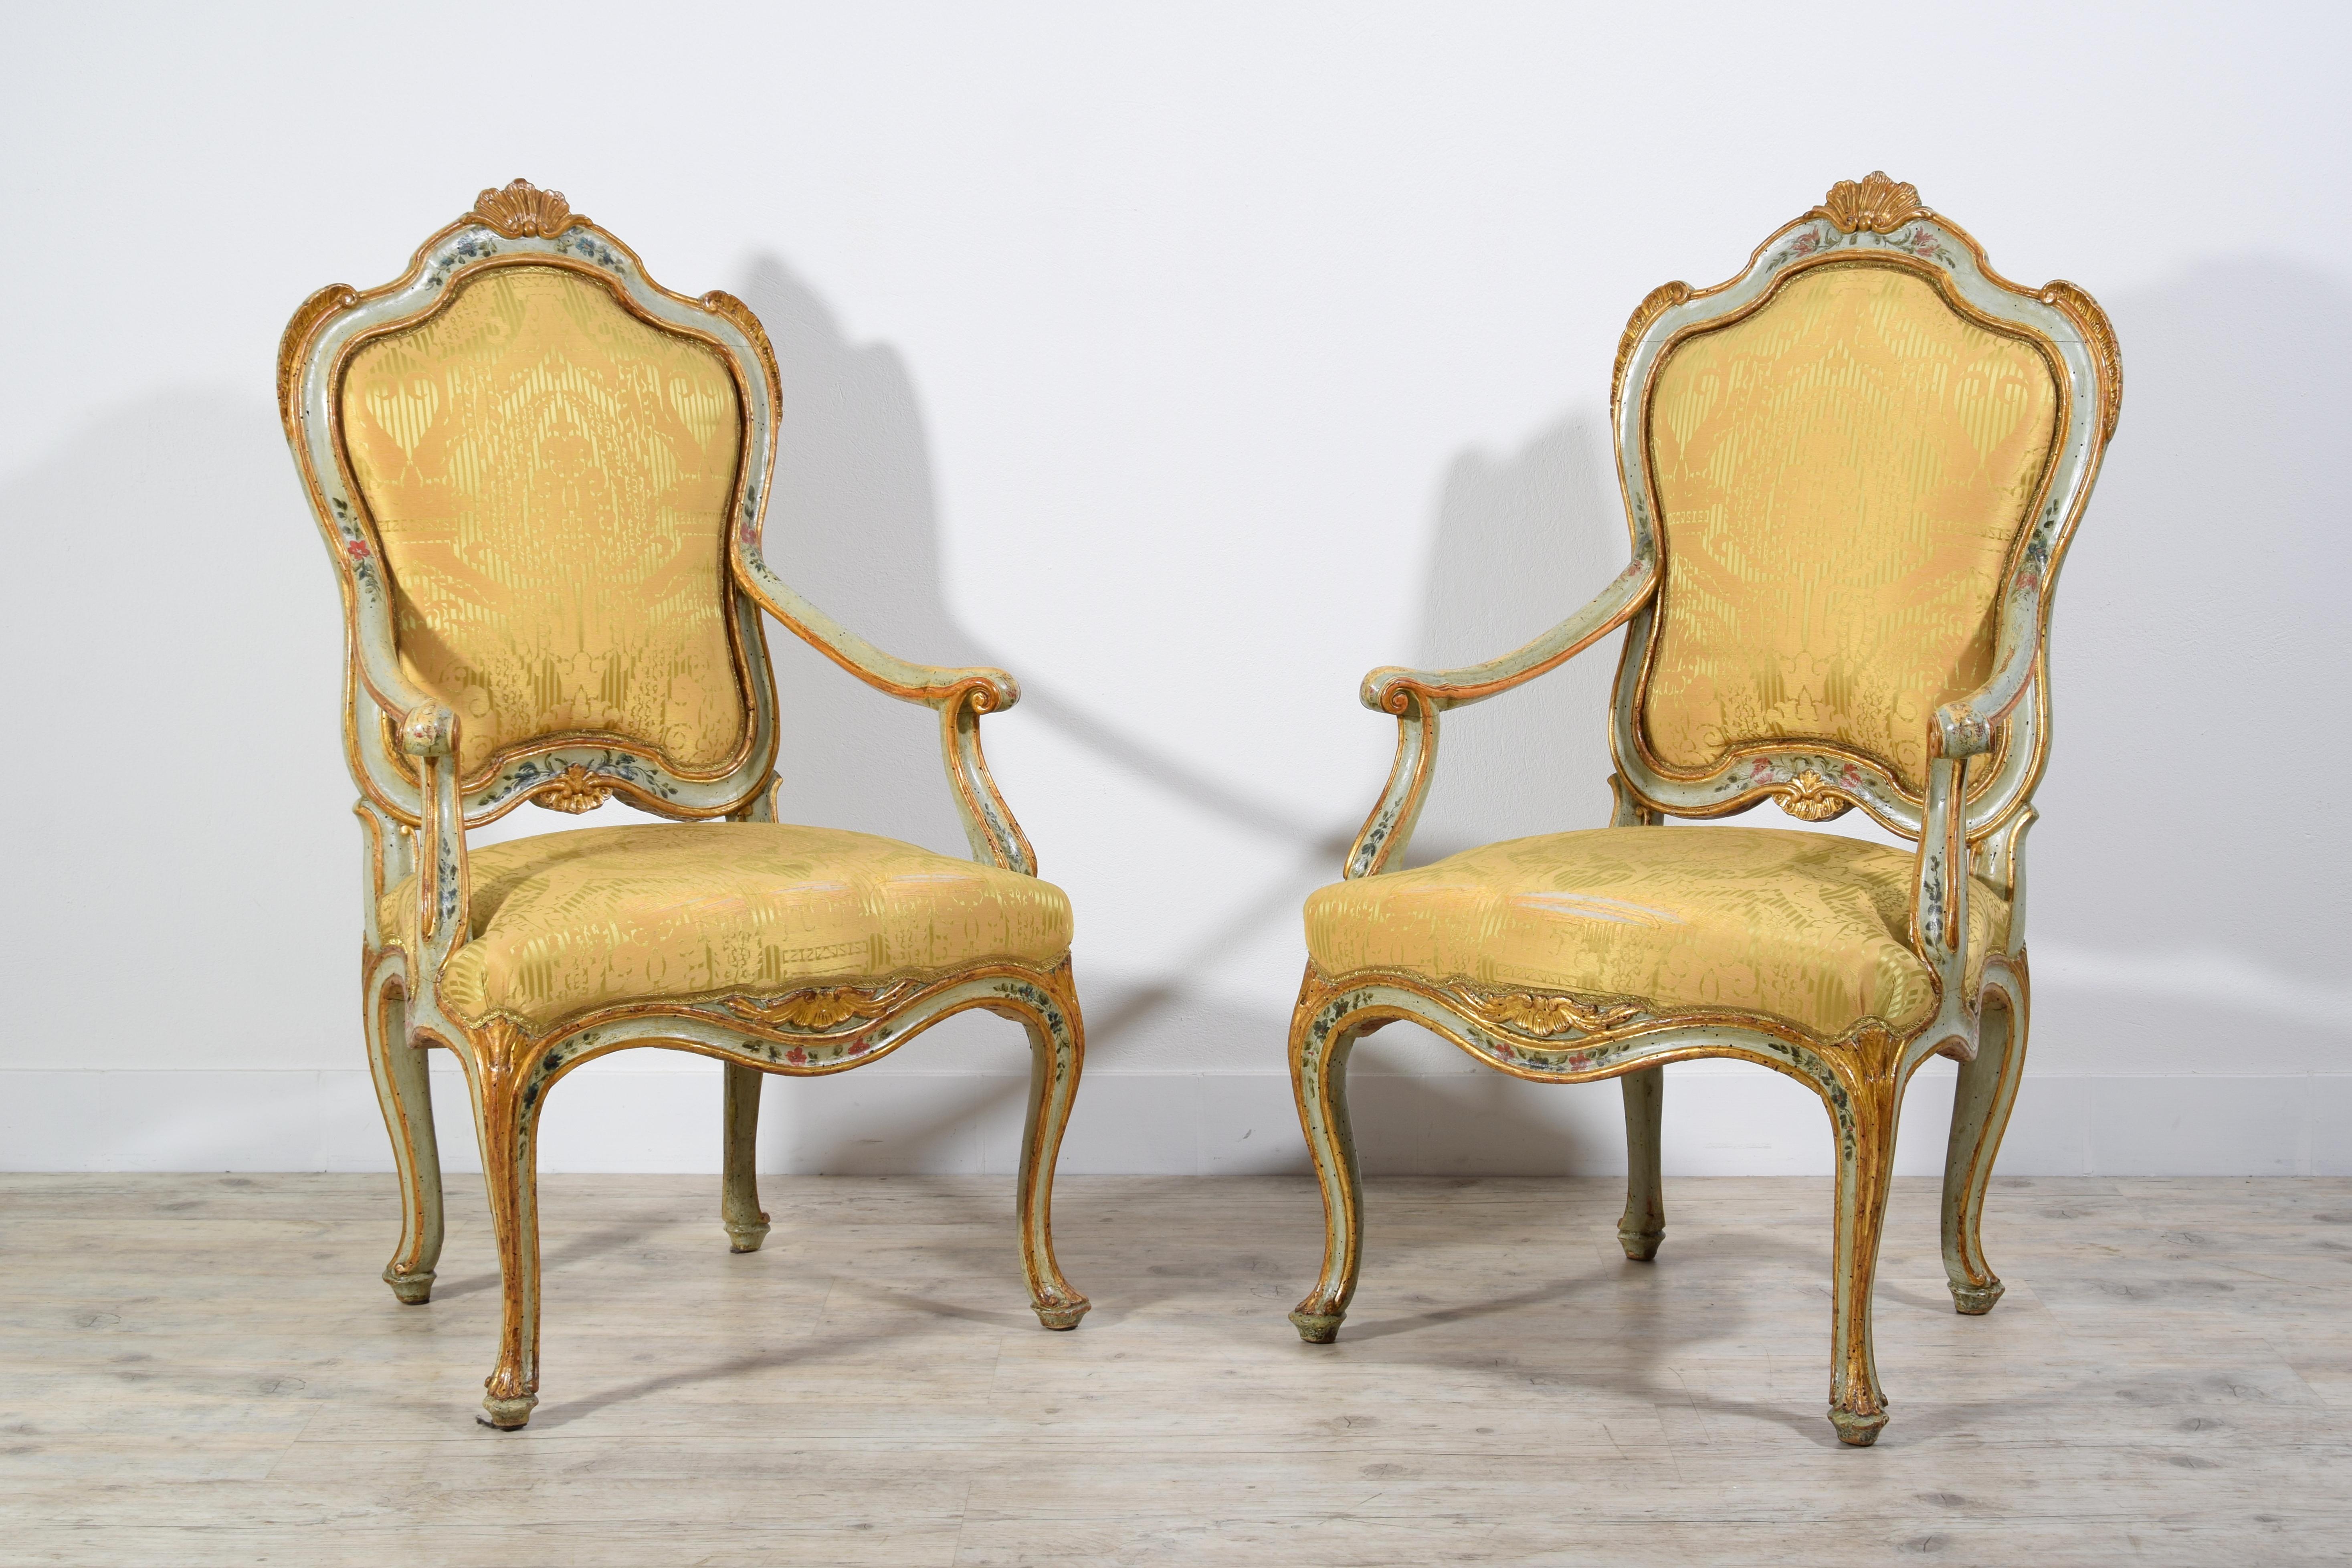 18. Jahrhundert, Paar venezianische Barocchetto-Sessel aus lackiertem Giltwood

Dieses raffinierte und bedeutende Sesselpaar wurde um die Mitte des 18. Jahrhunderts in Venedig, Italien, aus geschnitztem, lackiertem und vergoldetem Holz hergestellt